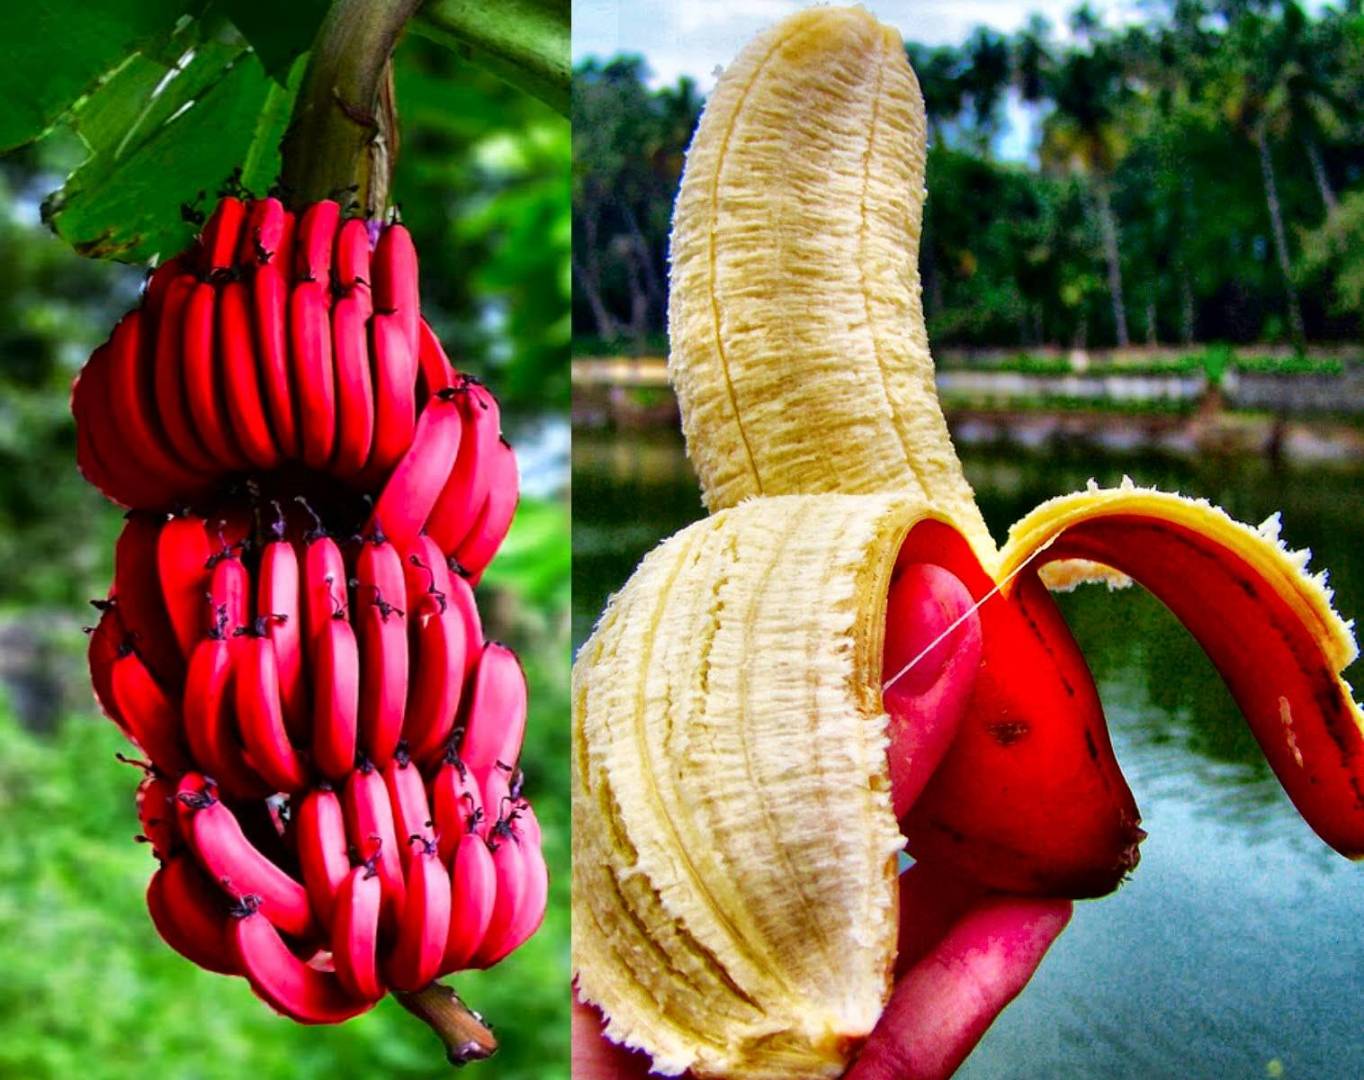 تعرف على الفوائد الصحية الموجودة في الموز الأحمر